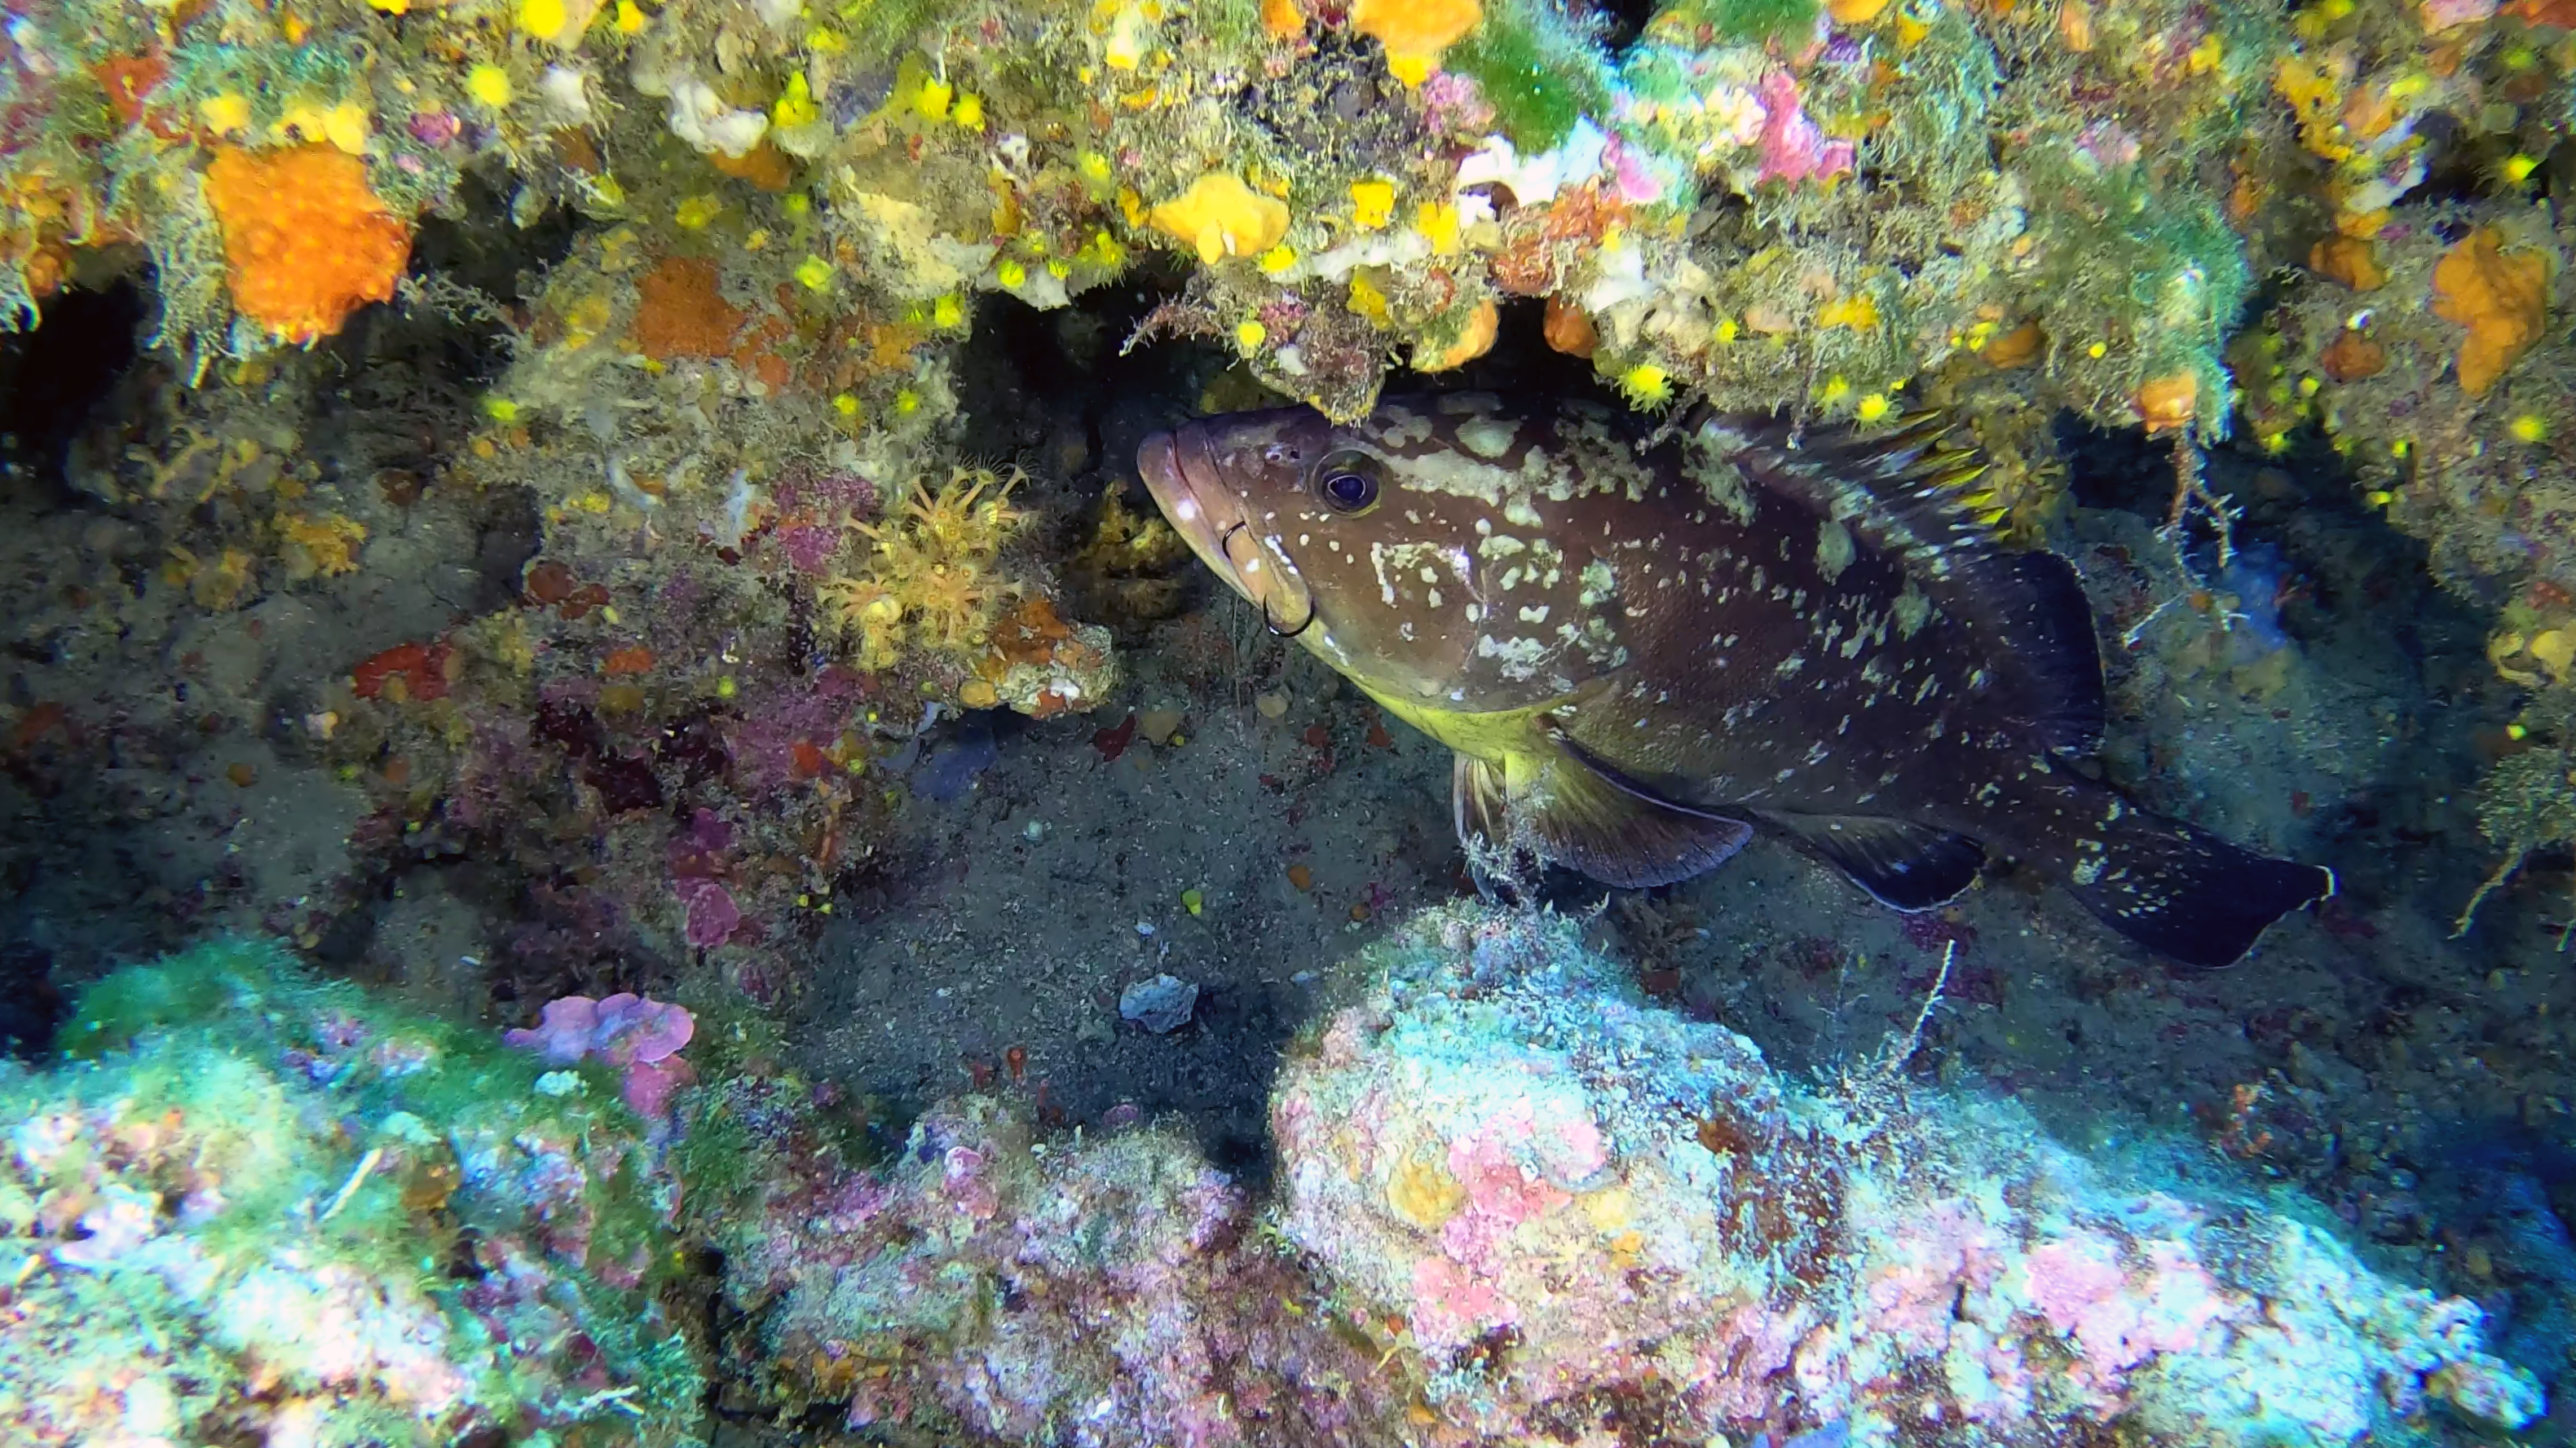 Grouper of Mediterranean Sea - Cernia Bruna - Epinephelus marginatus - www.intotheblue.it